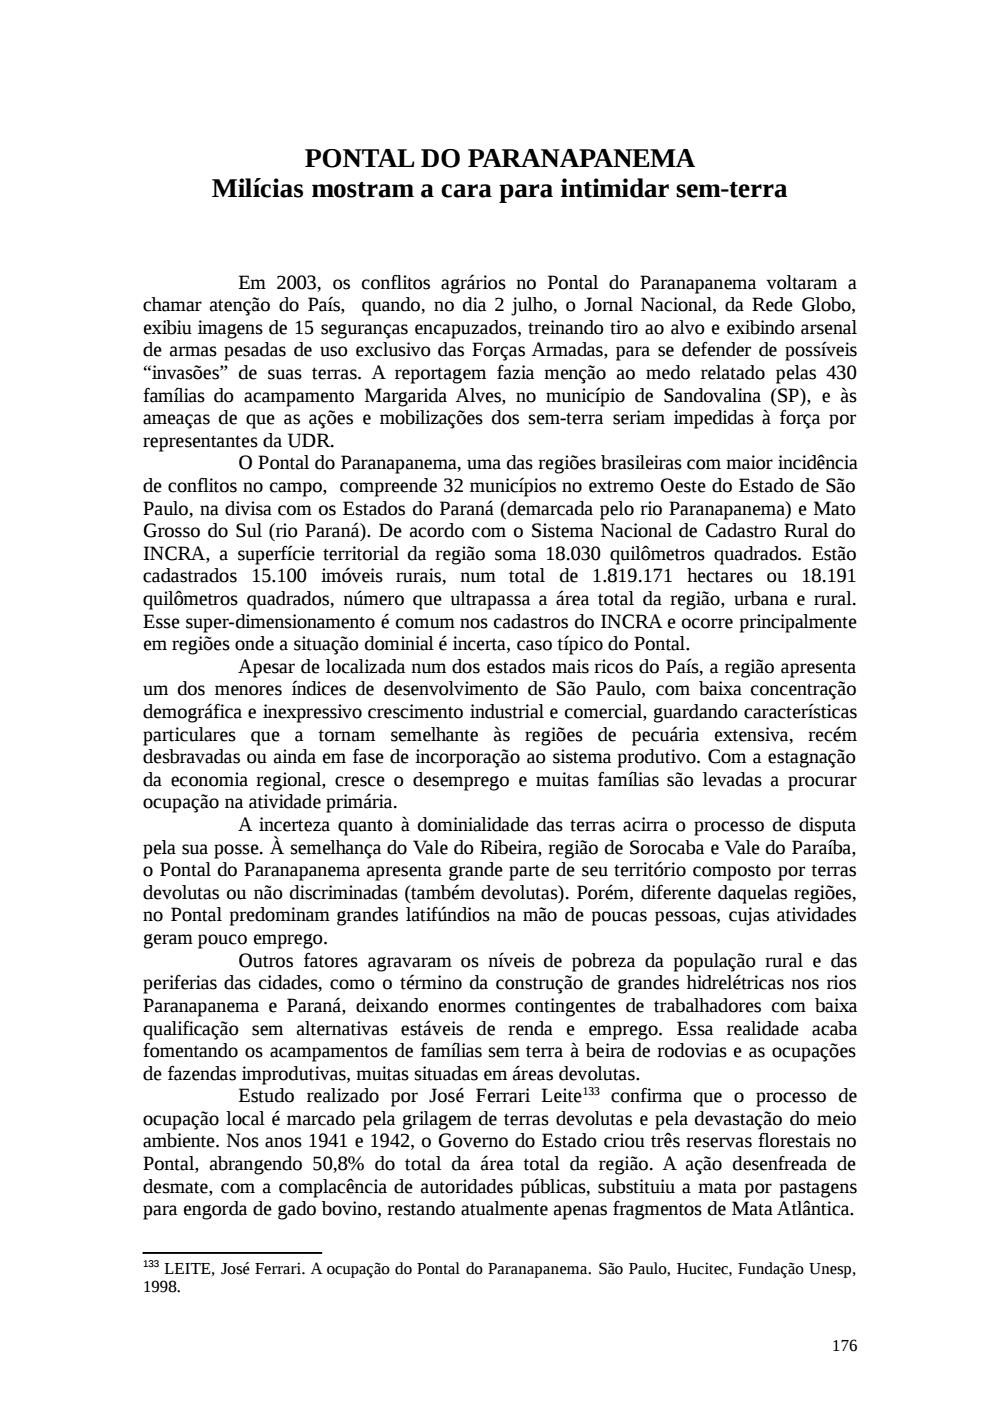 Page 176 from Relatório final da comissão